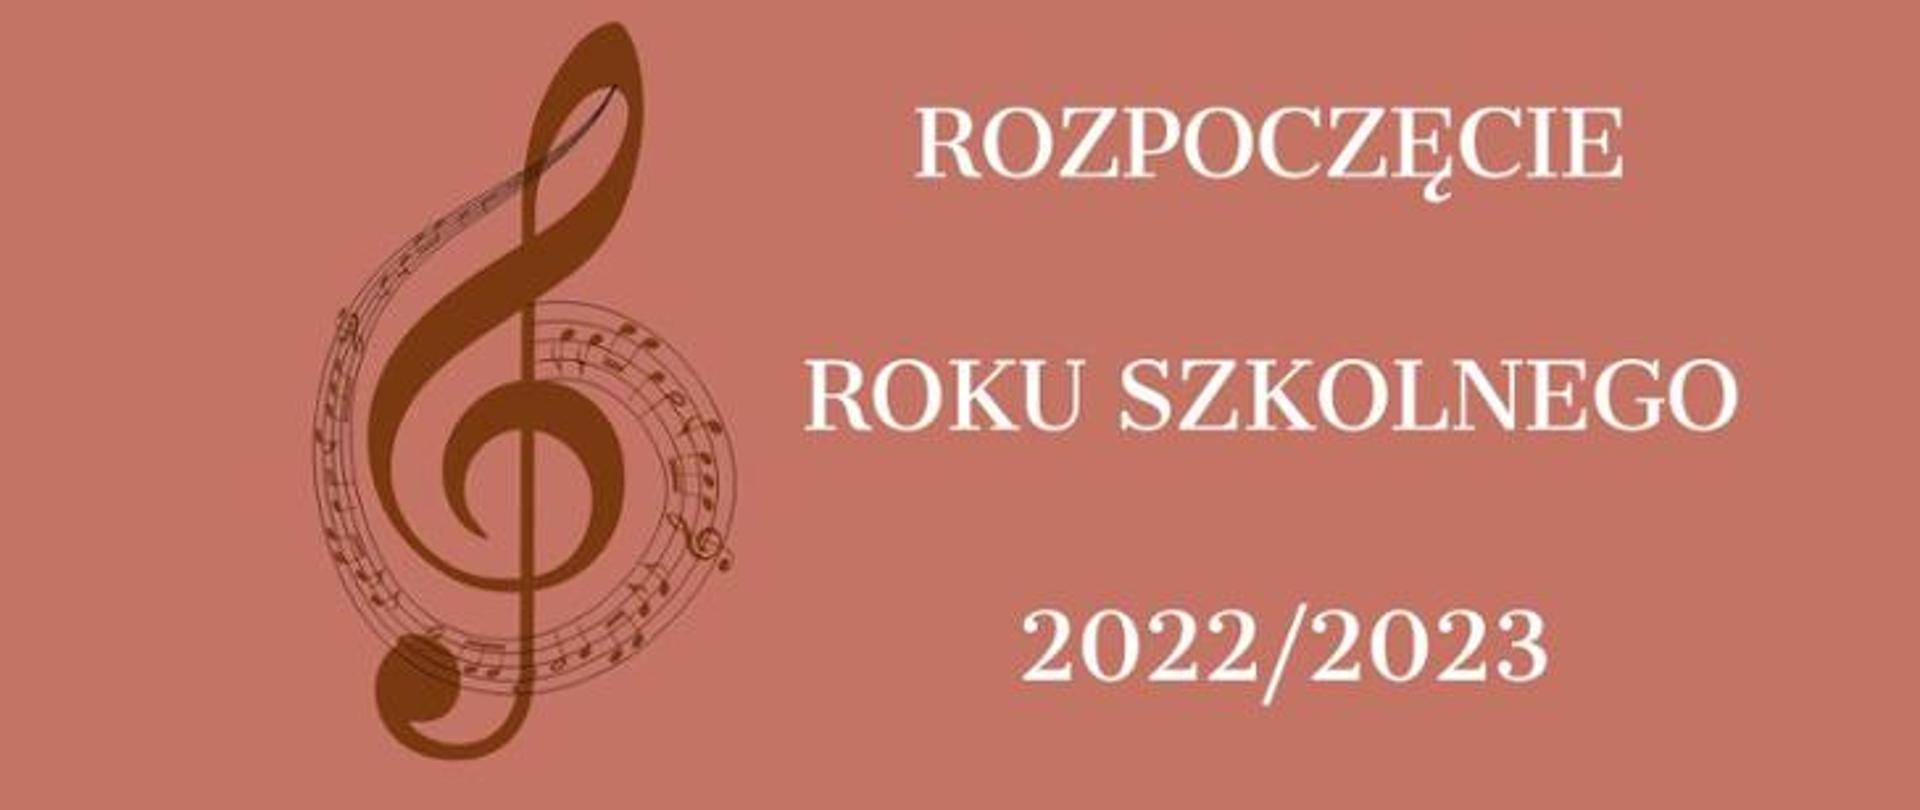 Na grafice znajduje się klucz wiolinowy oraz informacje o rozpoczęciu roku szkolnego 2022/23